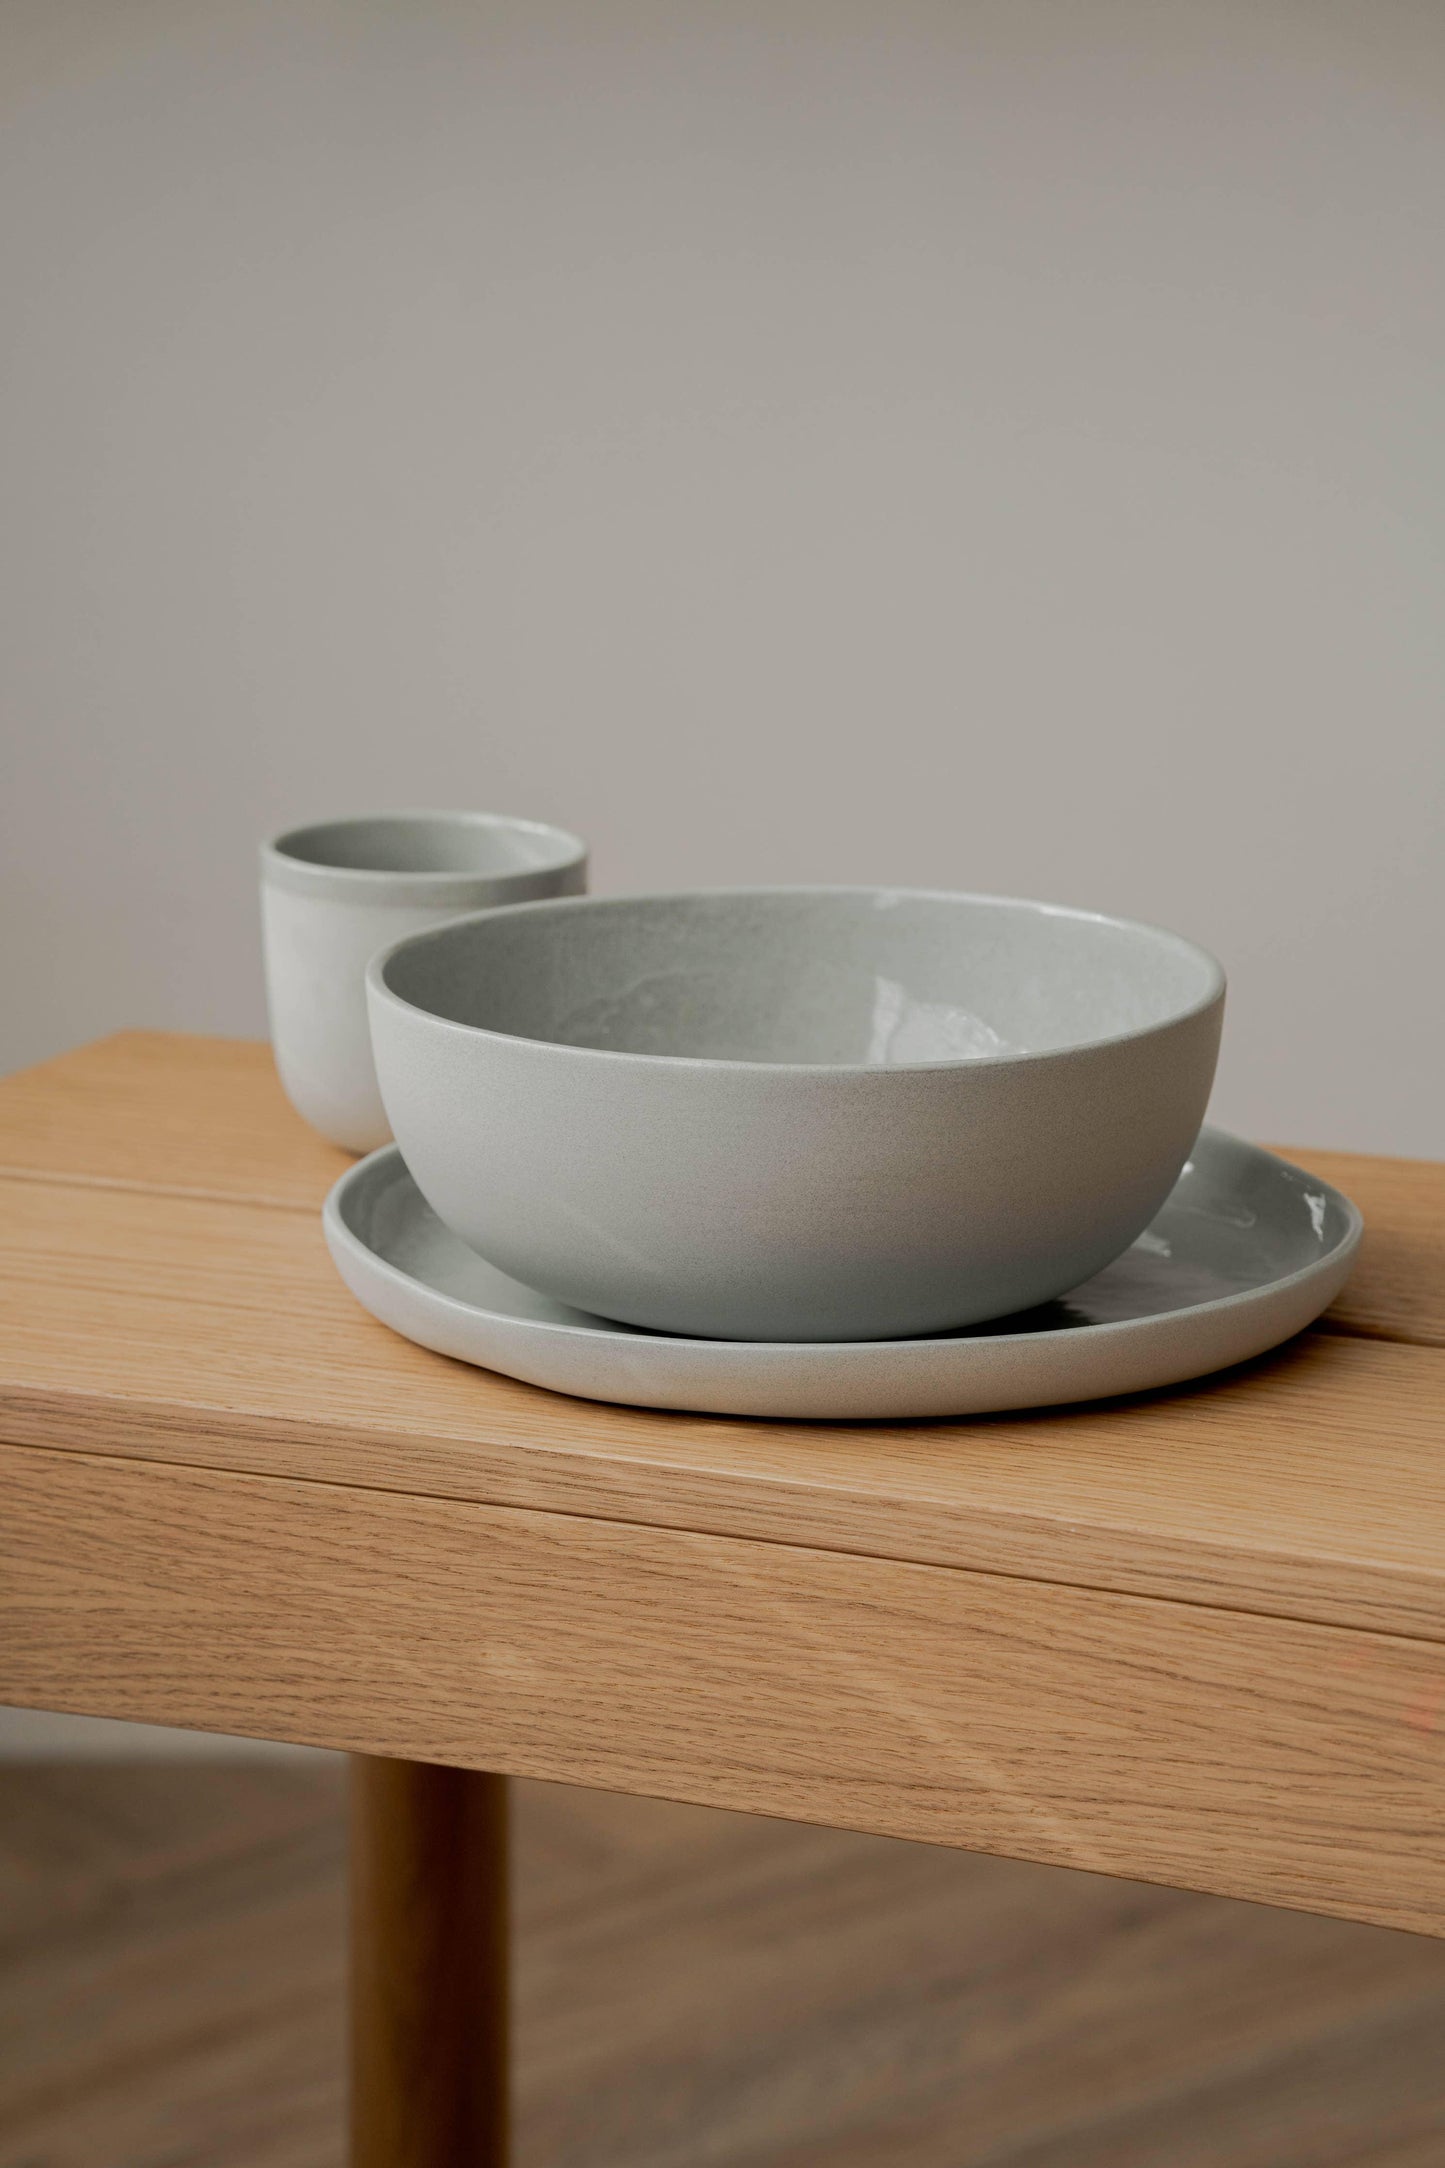 Ethical Trade Co Home Handmade Ukrainian Porcelain Bowls